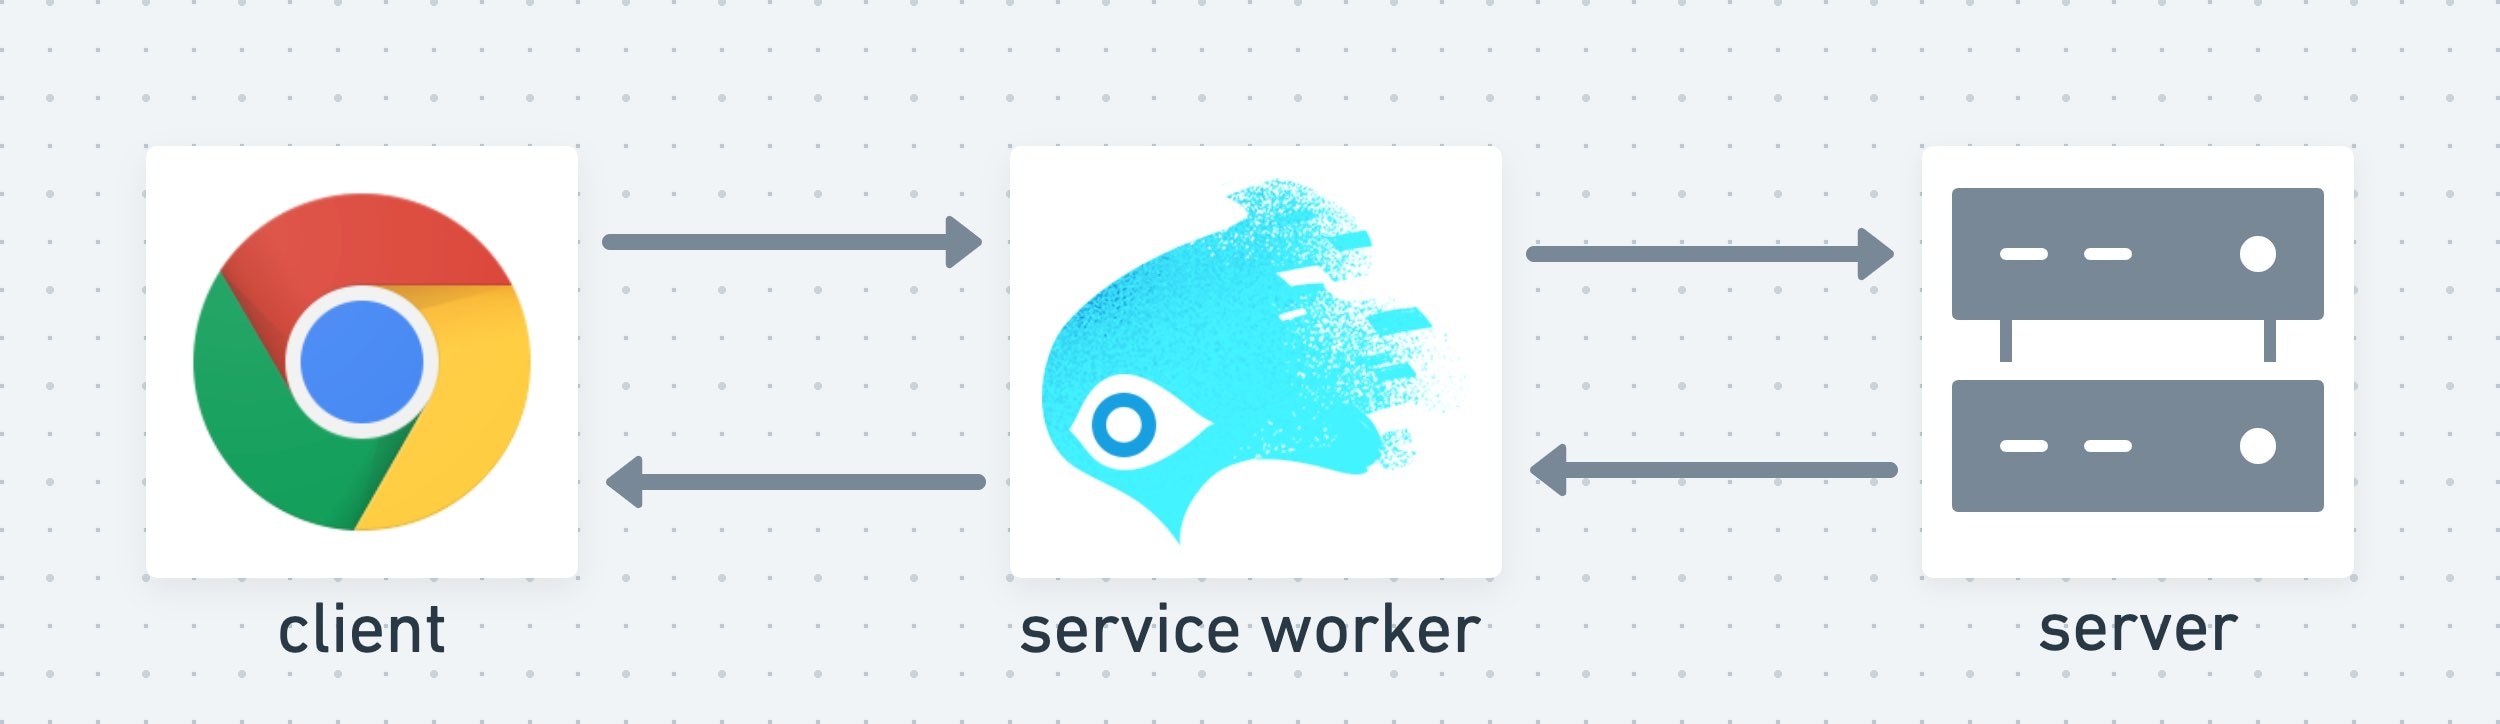 یک سرویس دهنده به عنوان یک لایه میانی بین مشتری و سرور عمل می کند